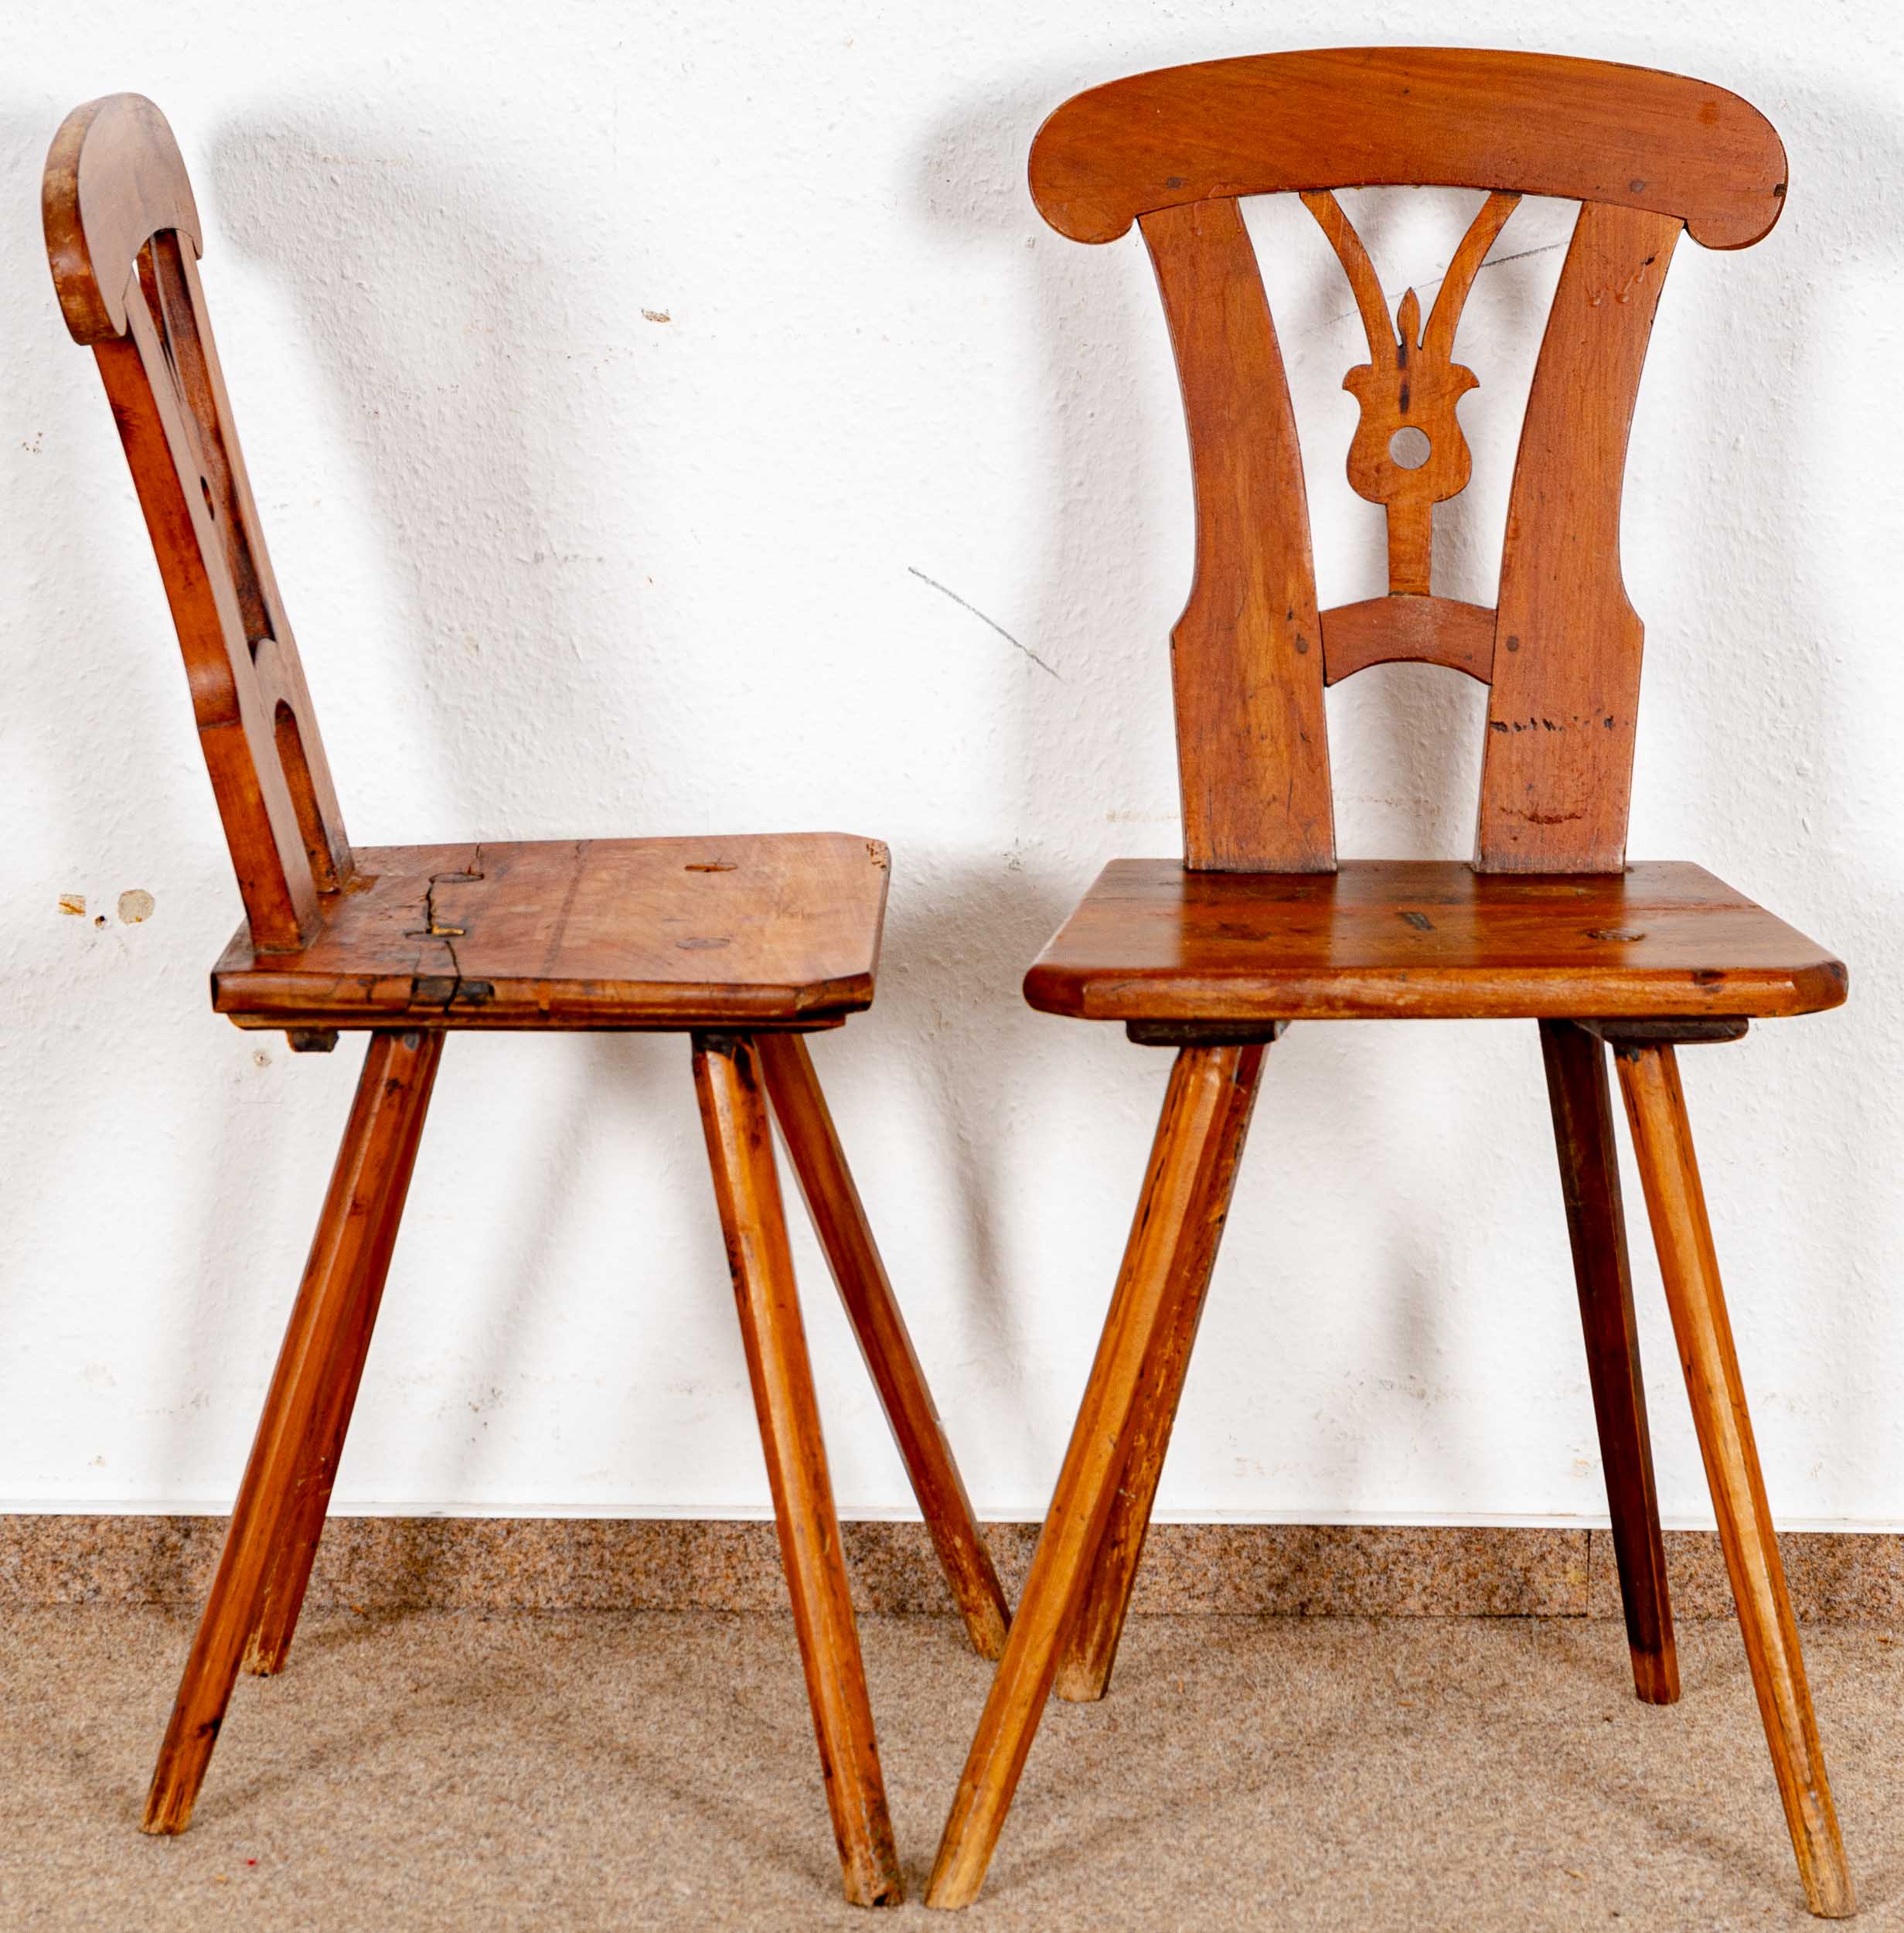 Paar Brettstühle, alpenländisch/süddeutsch, 19. Jhdt., kirschbaumfarbene Harthölzer; ältere Überarb - Image 2 of 4